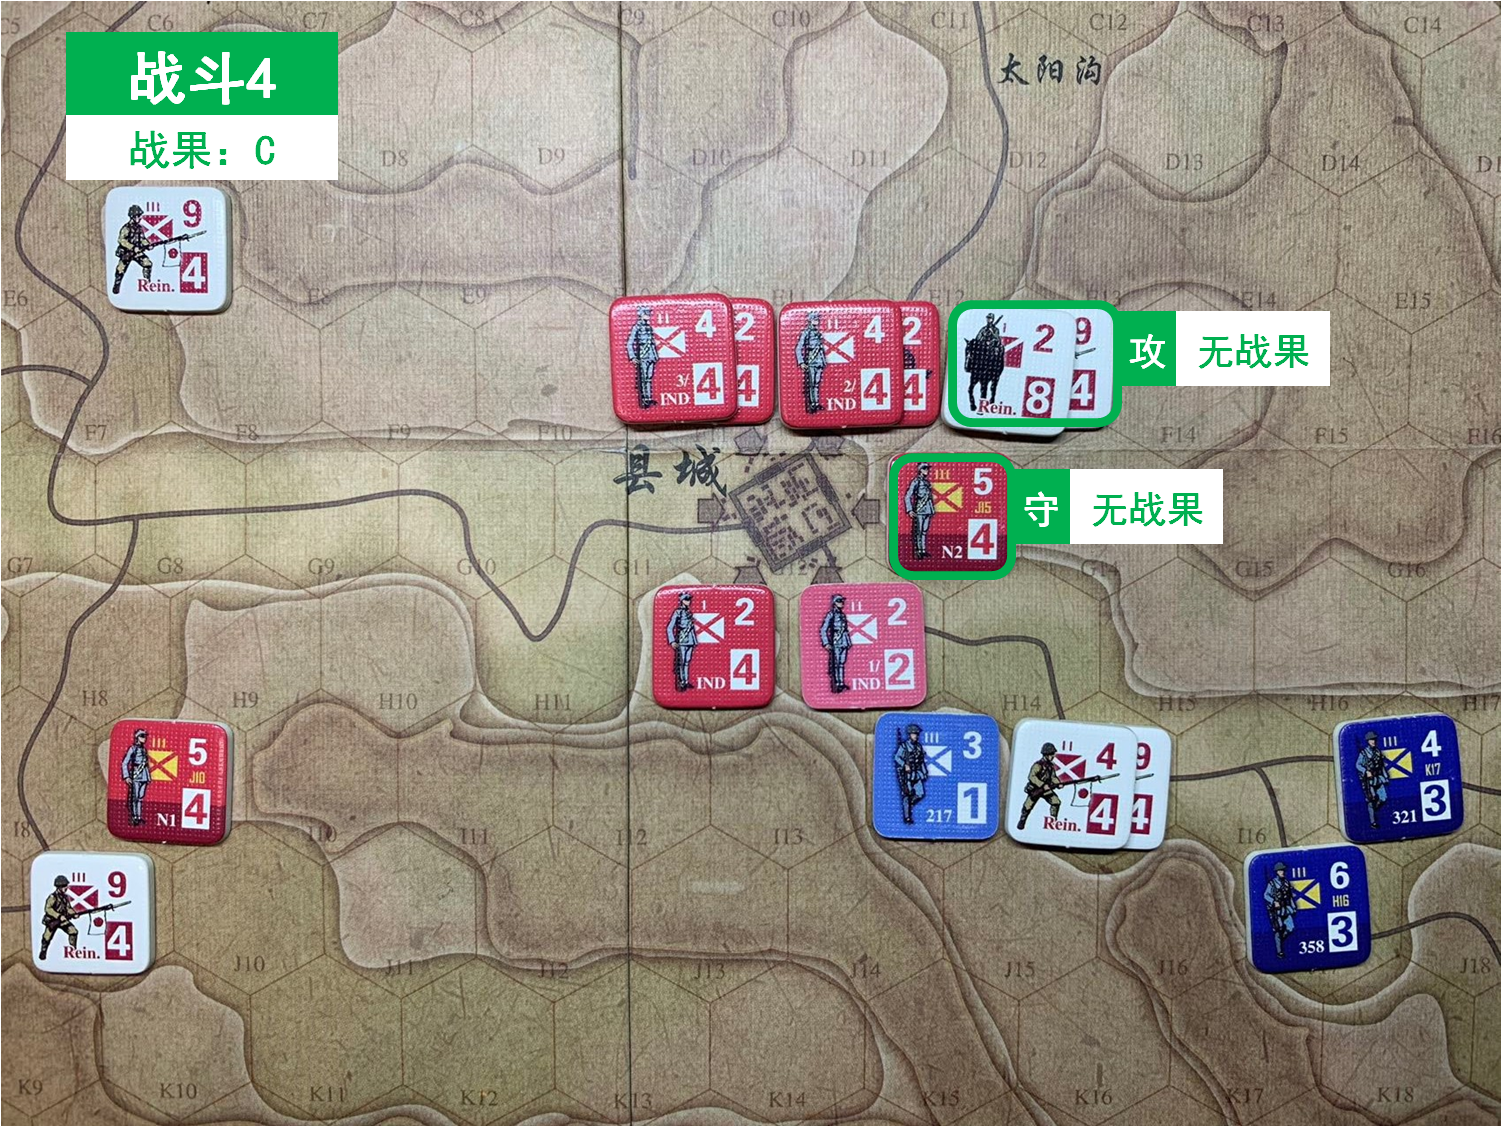 第五回合 日方战斗阶段 战斗4 战斗结果